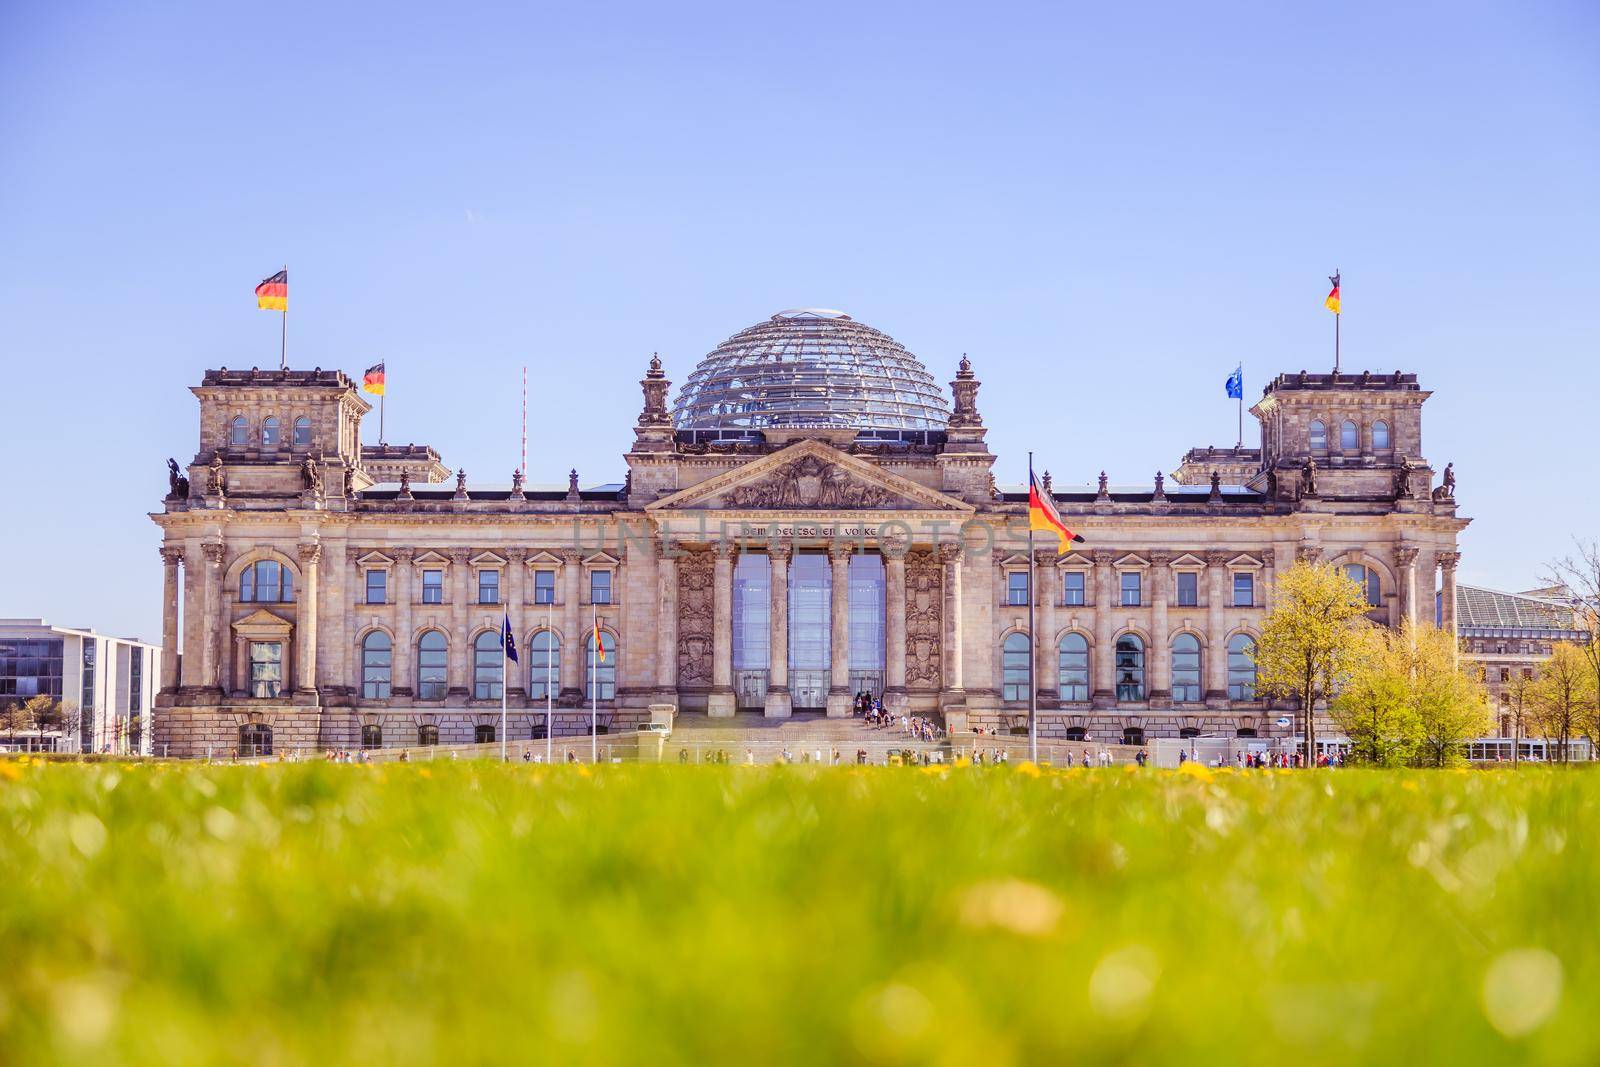 German parliament, Berliner Reichstag in springtime: Tourist attraction in Berlin by Daxenbichler